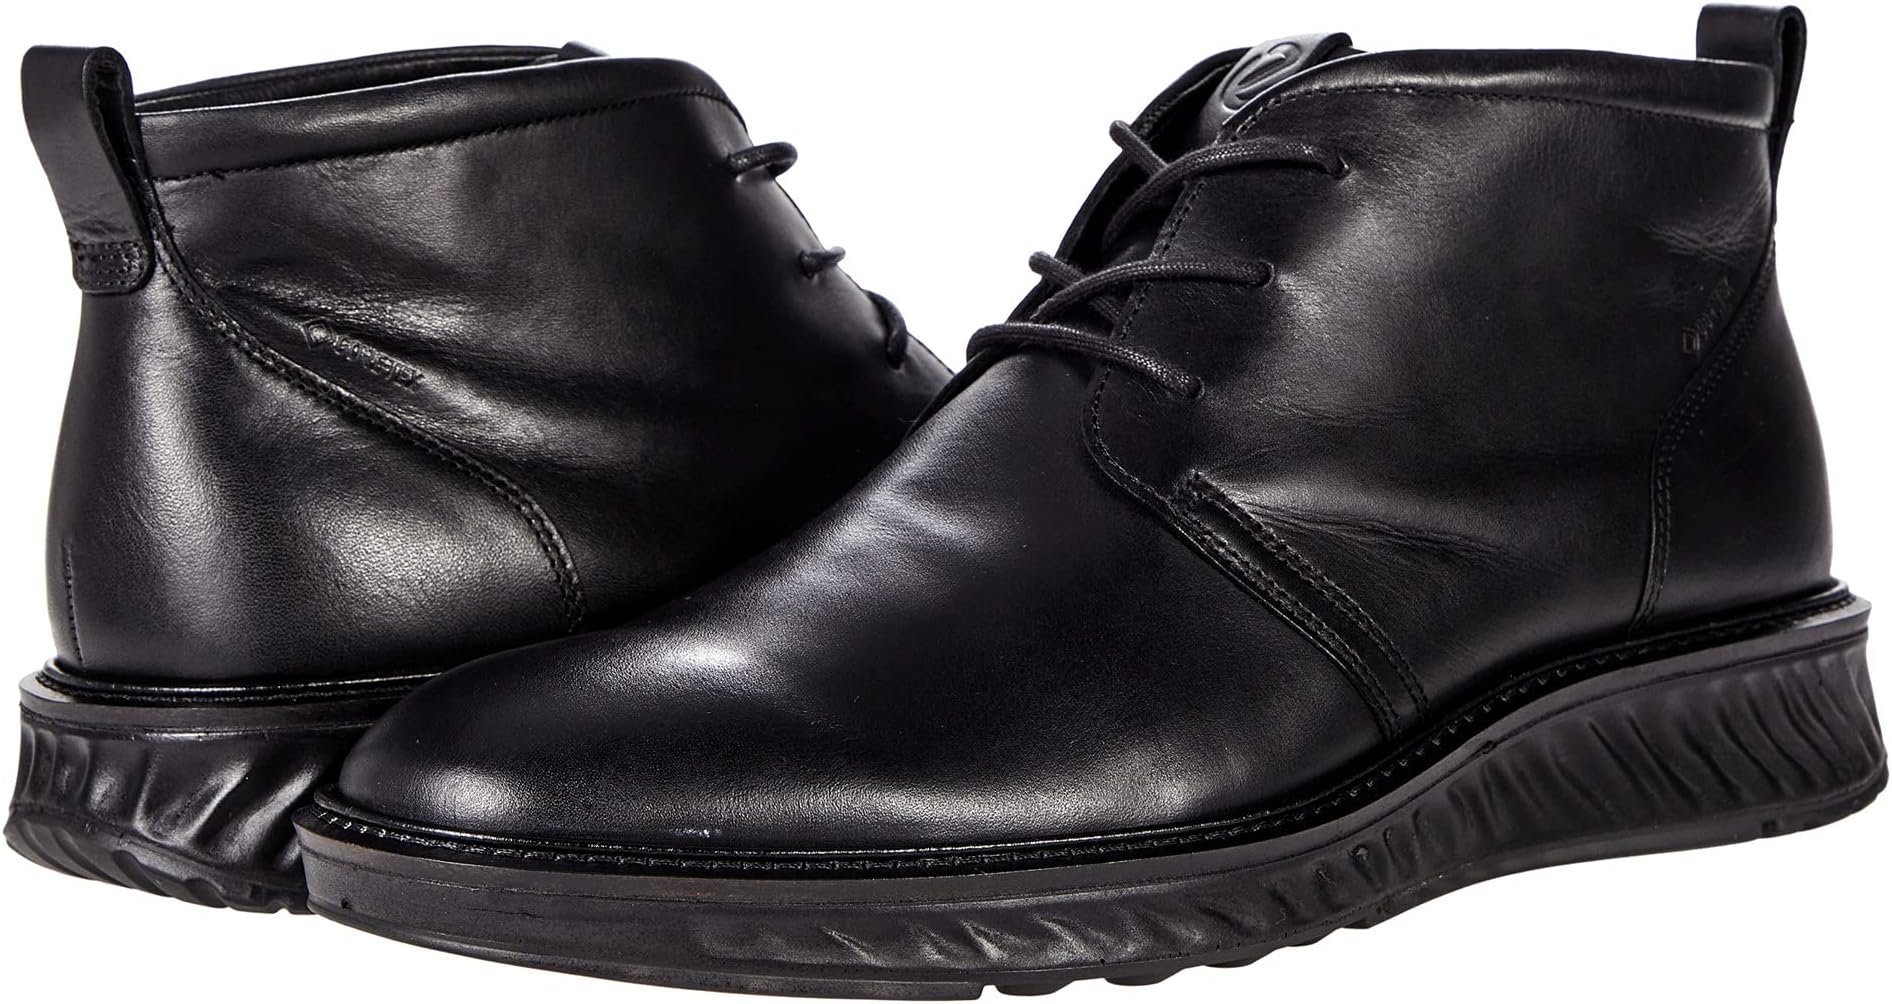 Ботинки St.1 Hybrid Boot GTX ECCO, цвет Black Cow Leather зимние ботинки ecco women s solice mid gtx leather cow yak цвет black black